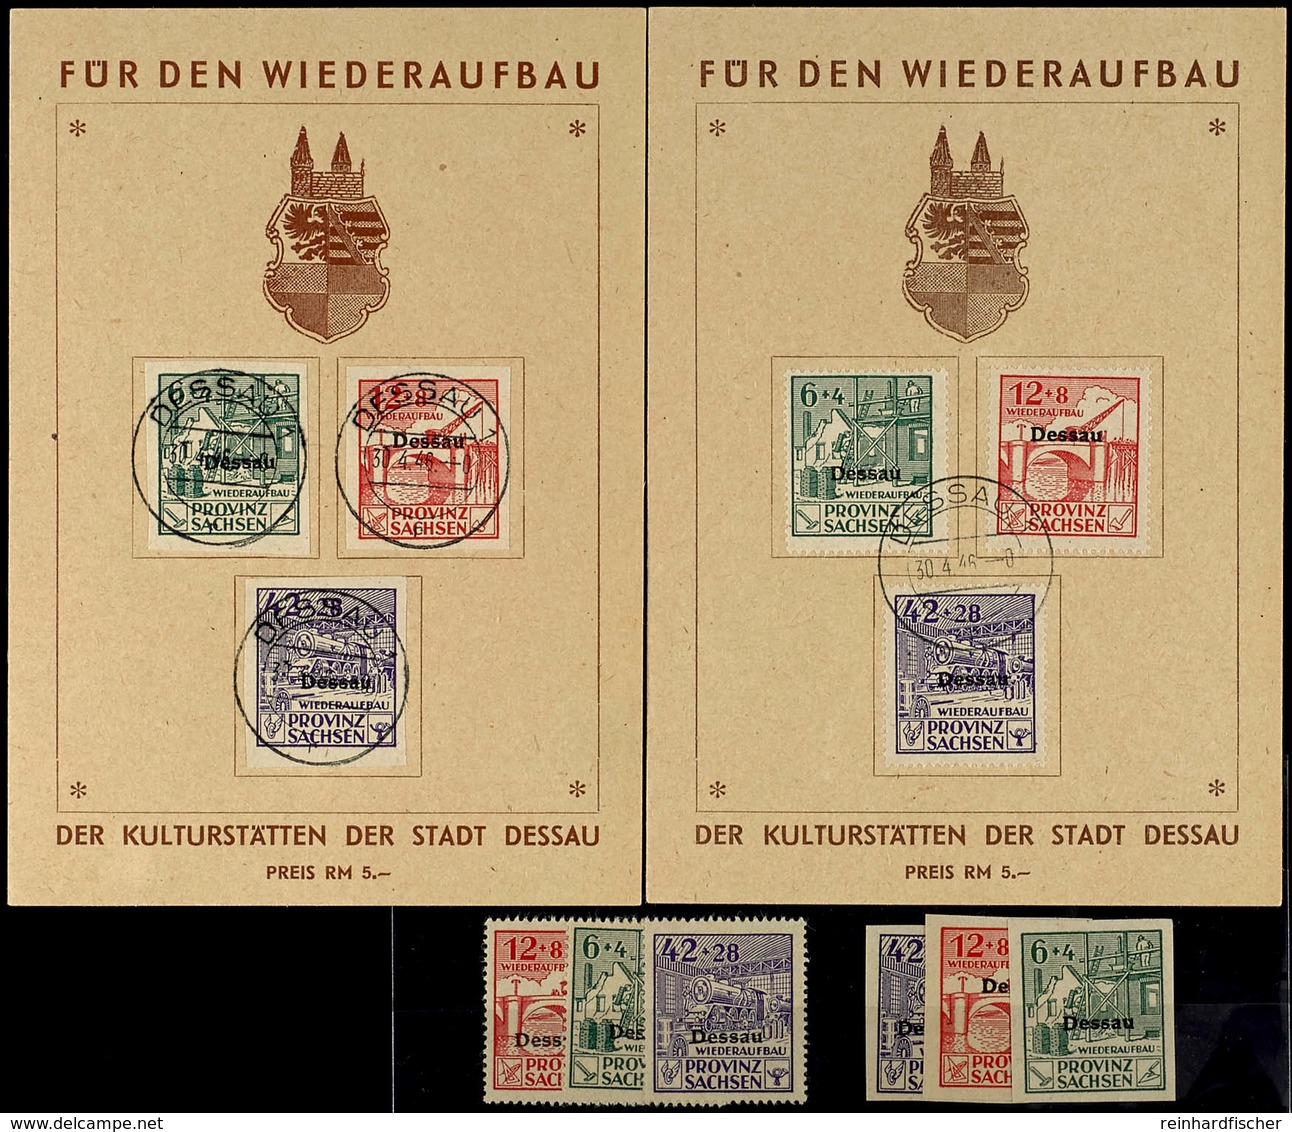 6 Pfg - 42 Pfg Spendenmarken, Gezähnt Und Ungezähnt Je Postfrisch Und Je Auf Wiederaufbau-Gedenkblatt, Tadellos, Mi. 300 - Dessau